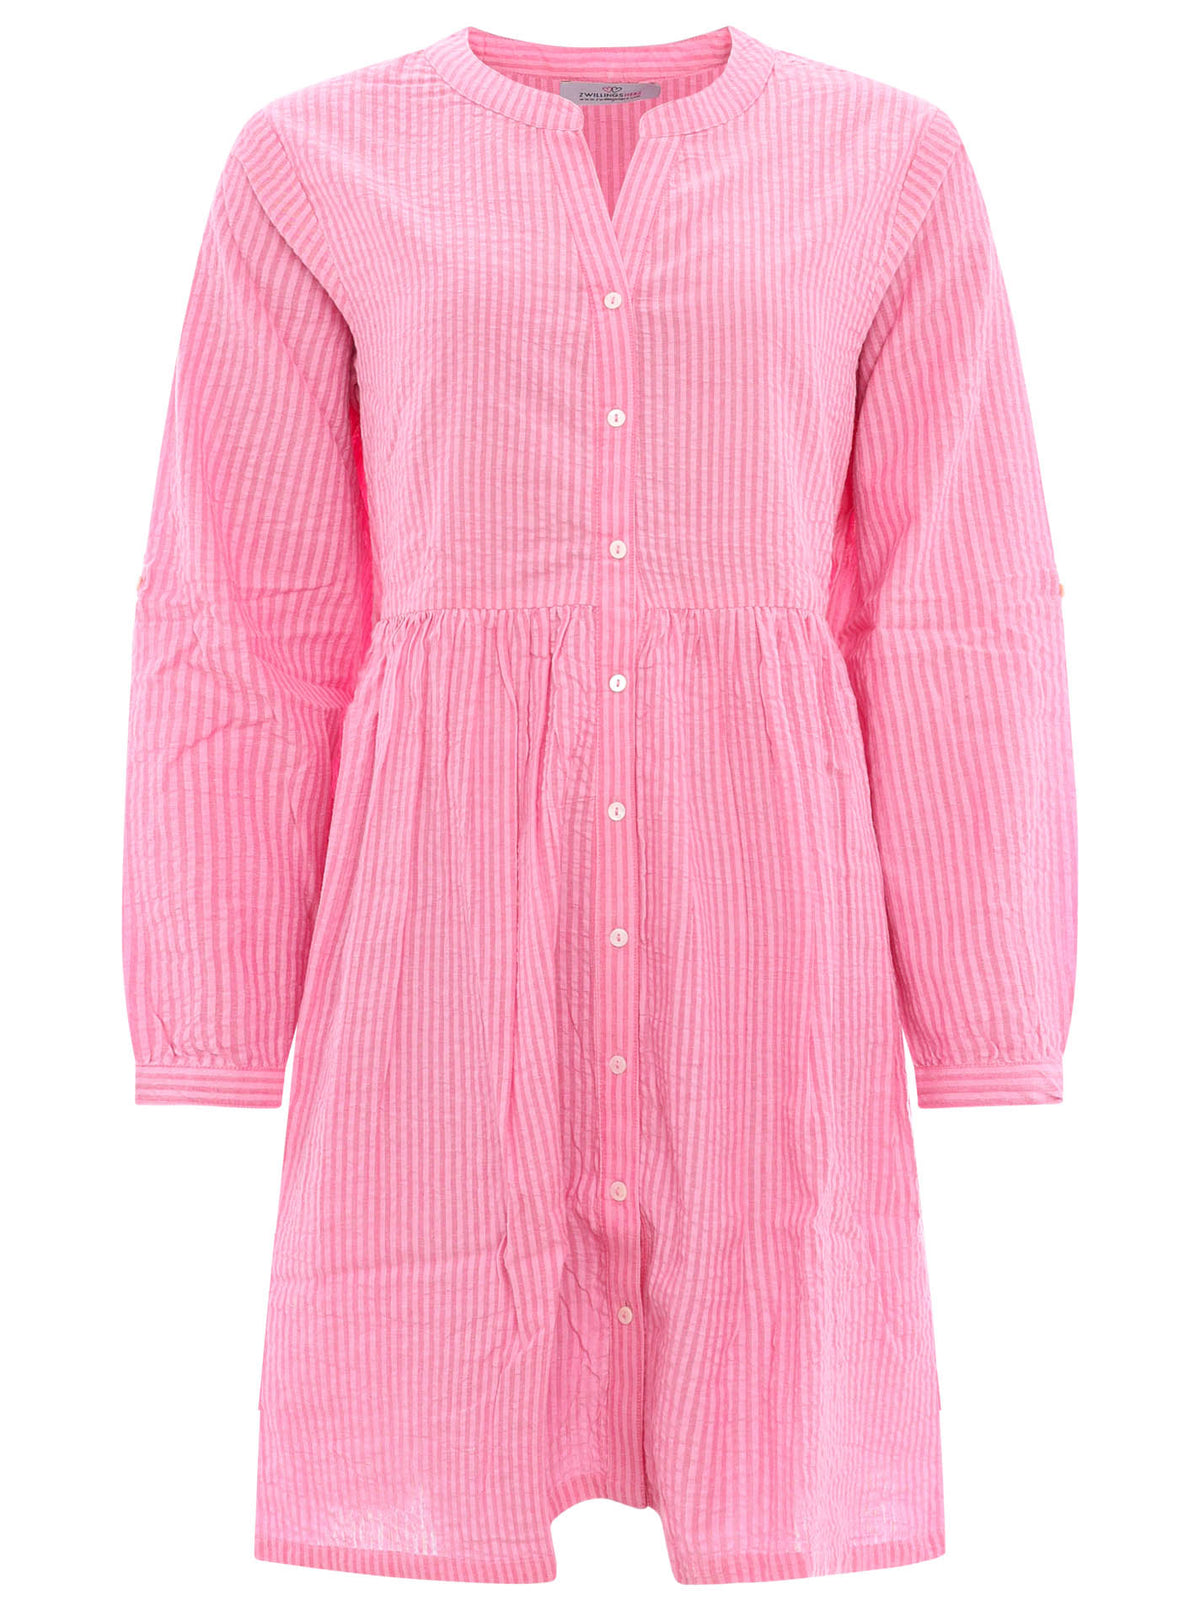 Zwillingsherz - Baumwoll Kleid / Tunika (Streifen) - Pink/Rosa